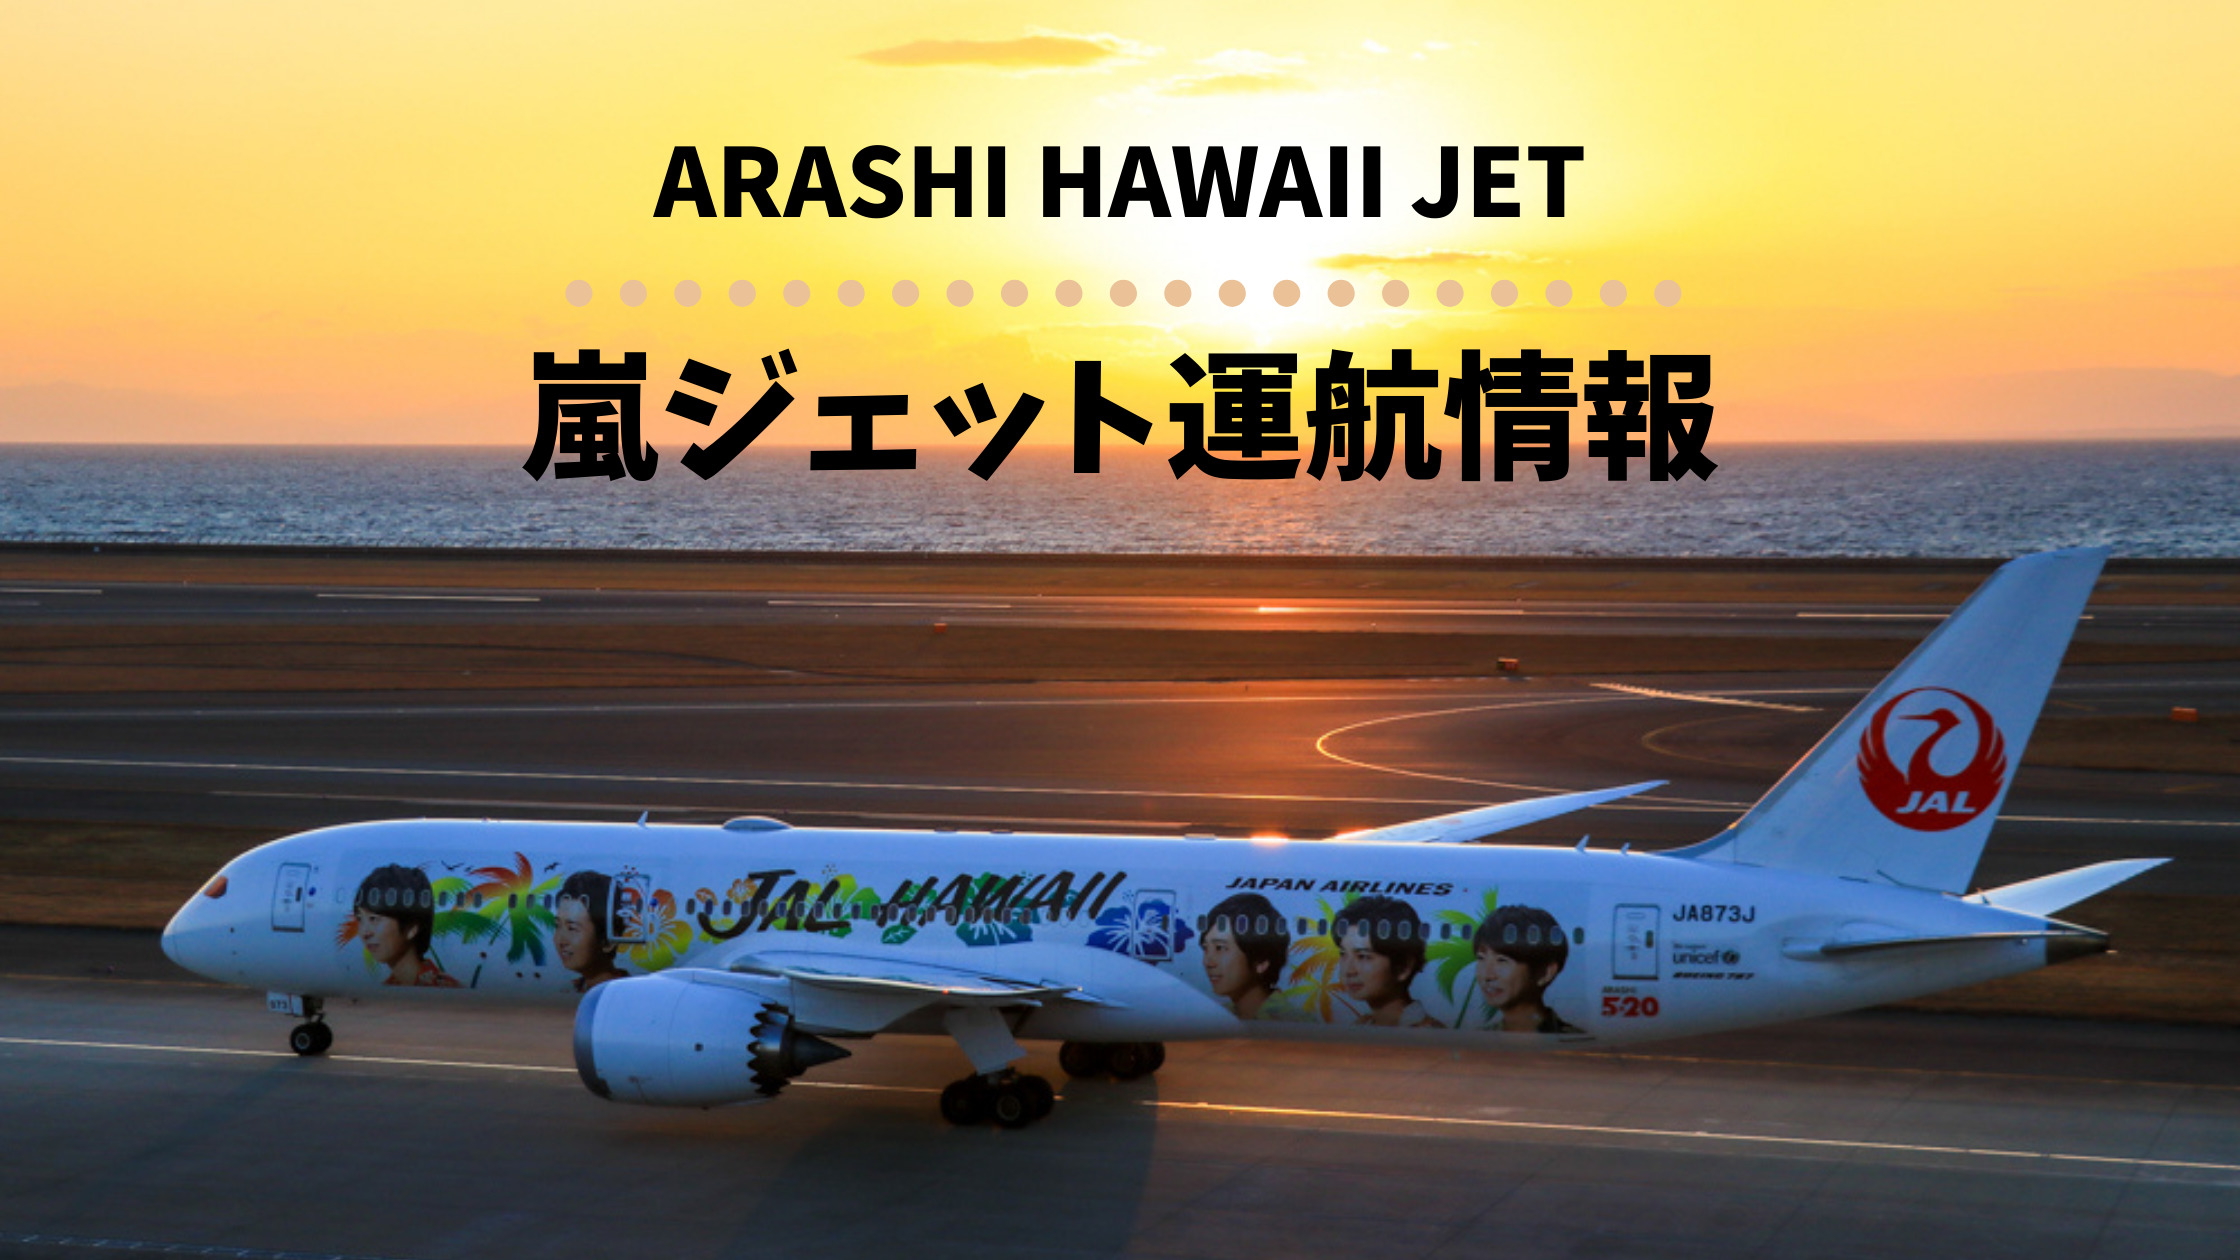 Jalハワイ嵐ジェット運航情報 Arashi Hawaii Jet はどこで見られる 運航スケジュールをほぼ毎日更新 シテイリョウコウ